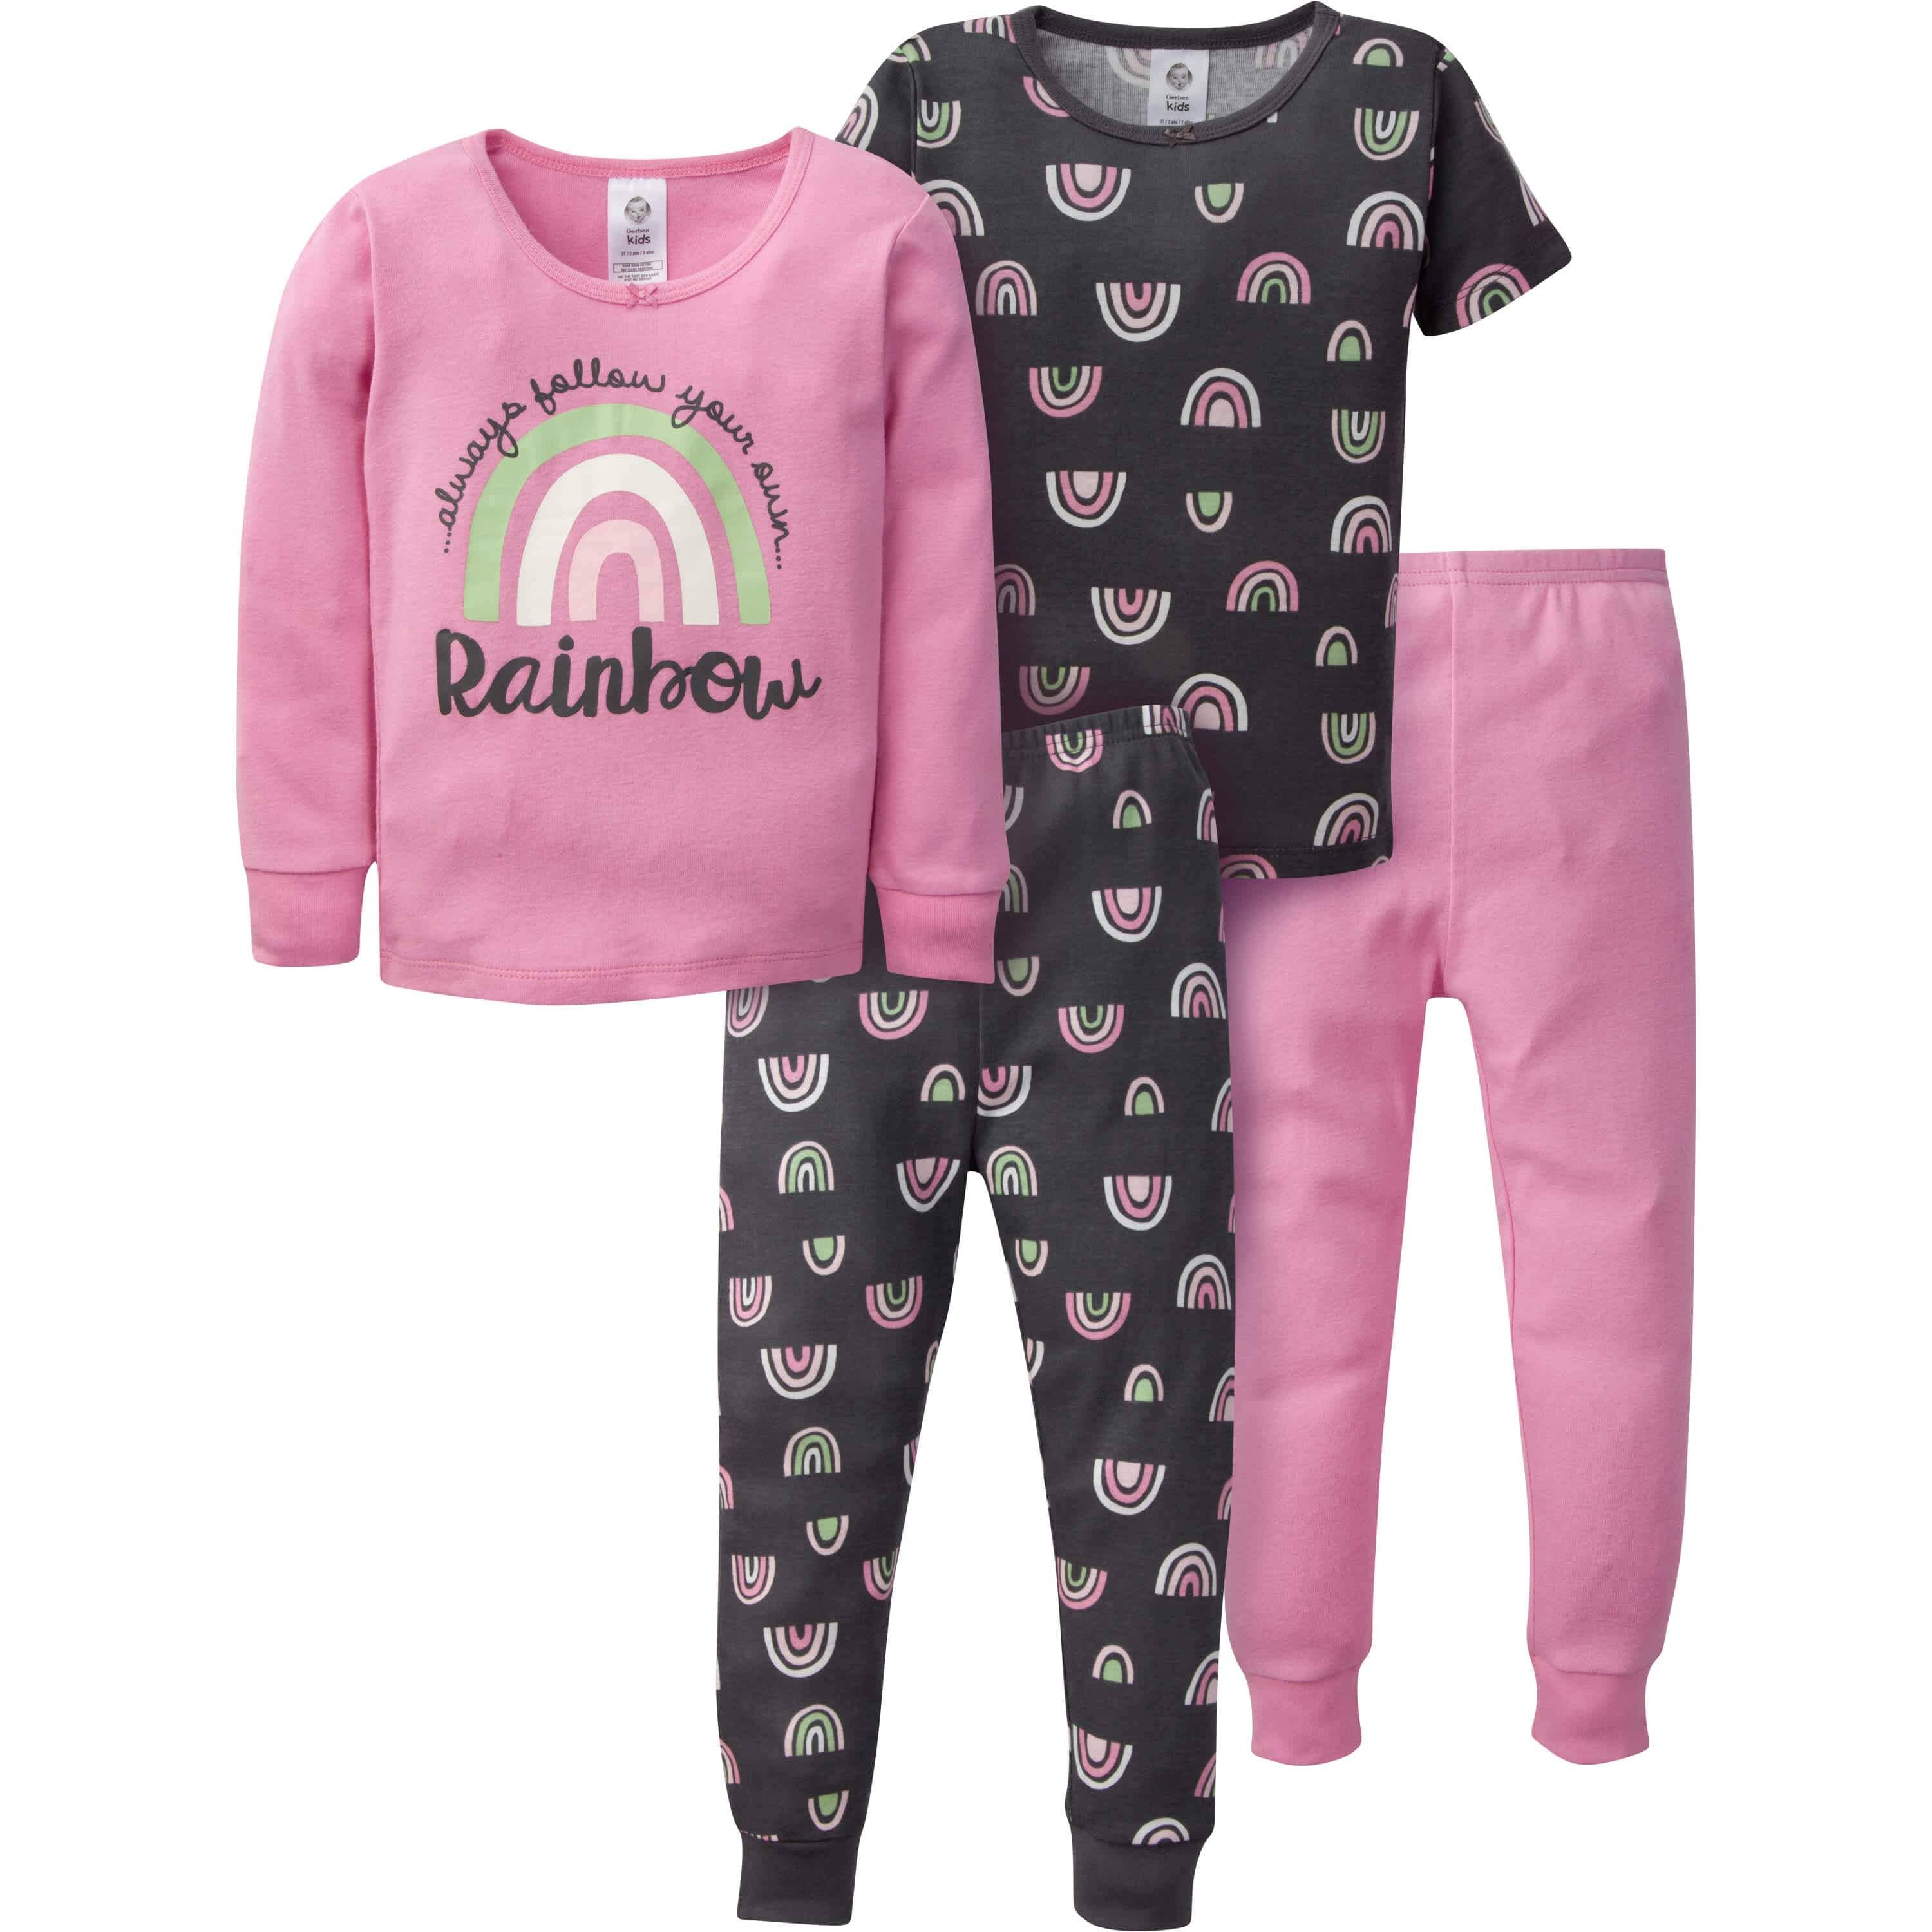 4-Piece Infant & Toddler Girls Rainbow Snug Fit Cotton Pajamas – Gerber ...